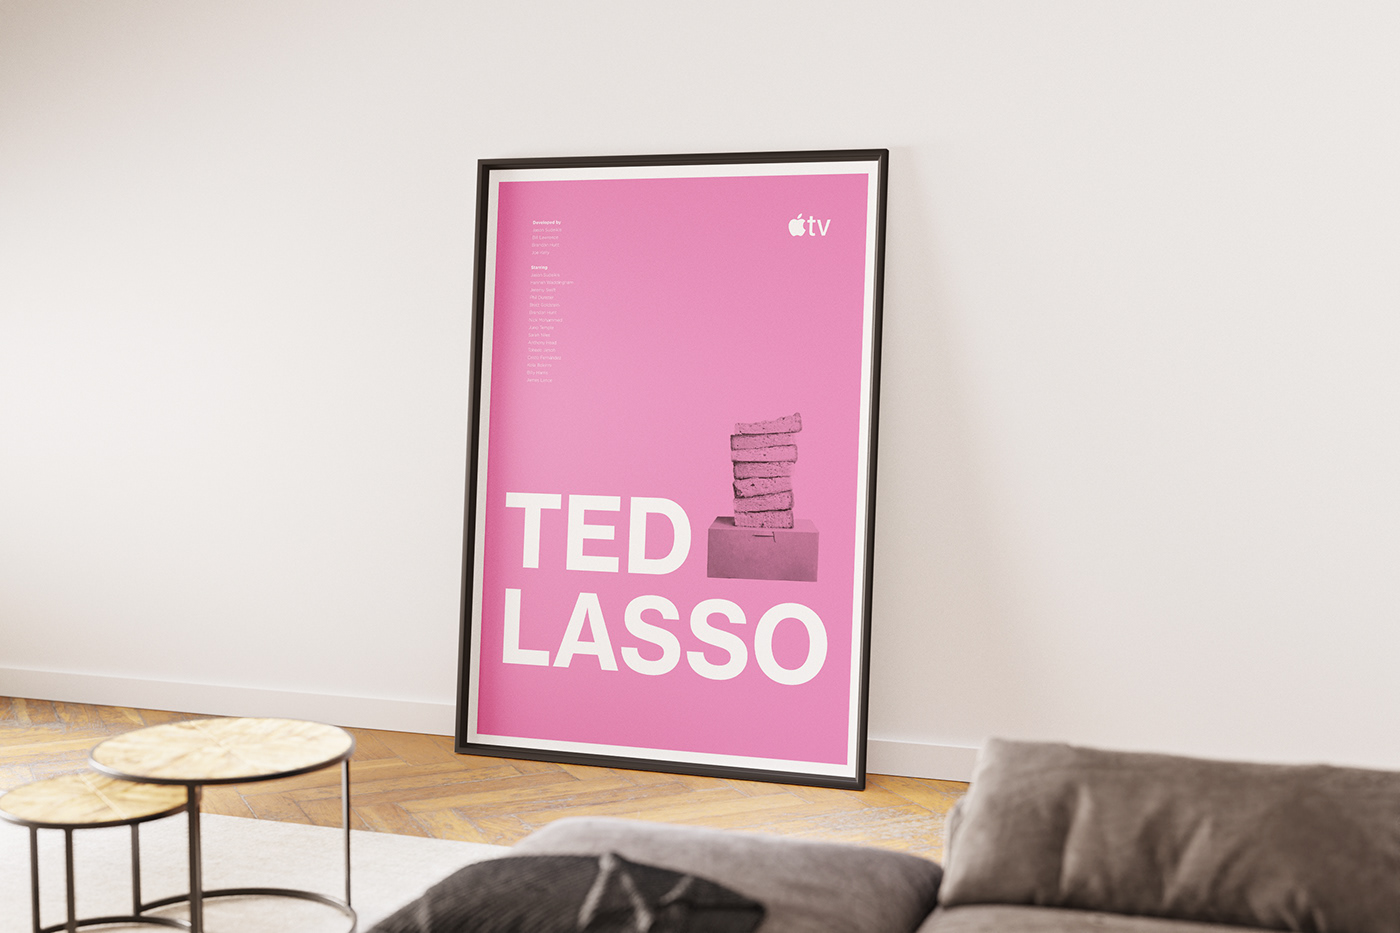 AppleTV tv concept visual brand identity design Social media post visual identity designer Ted Lasso